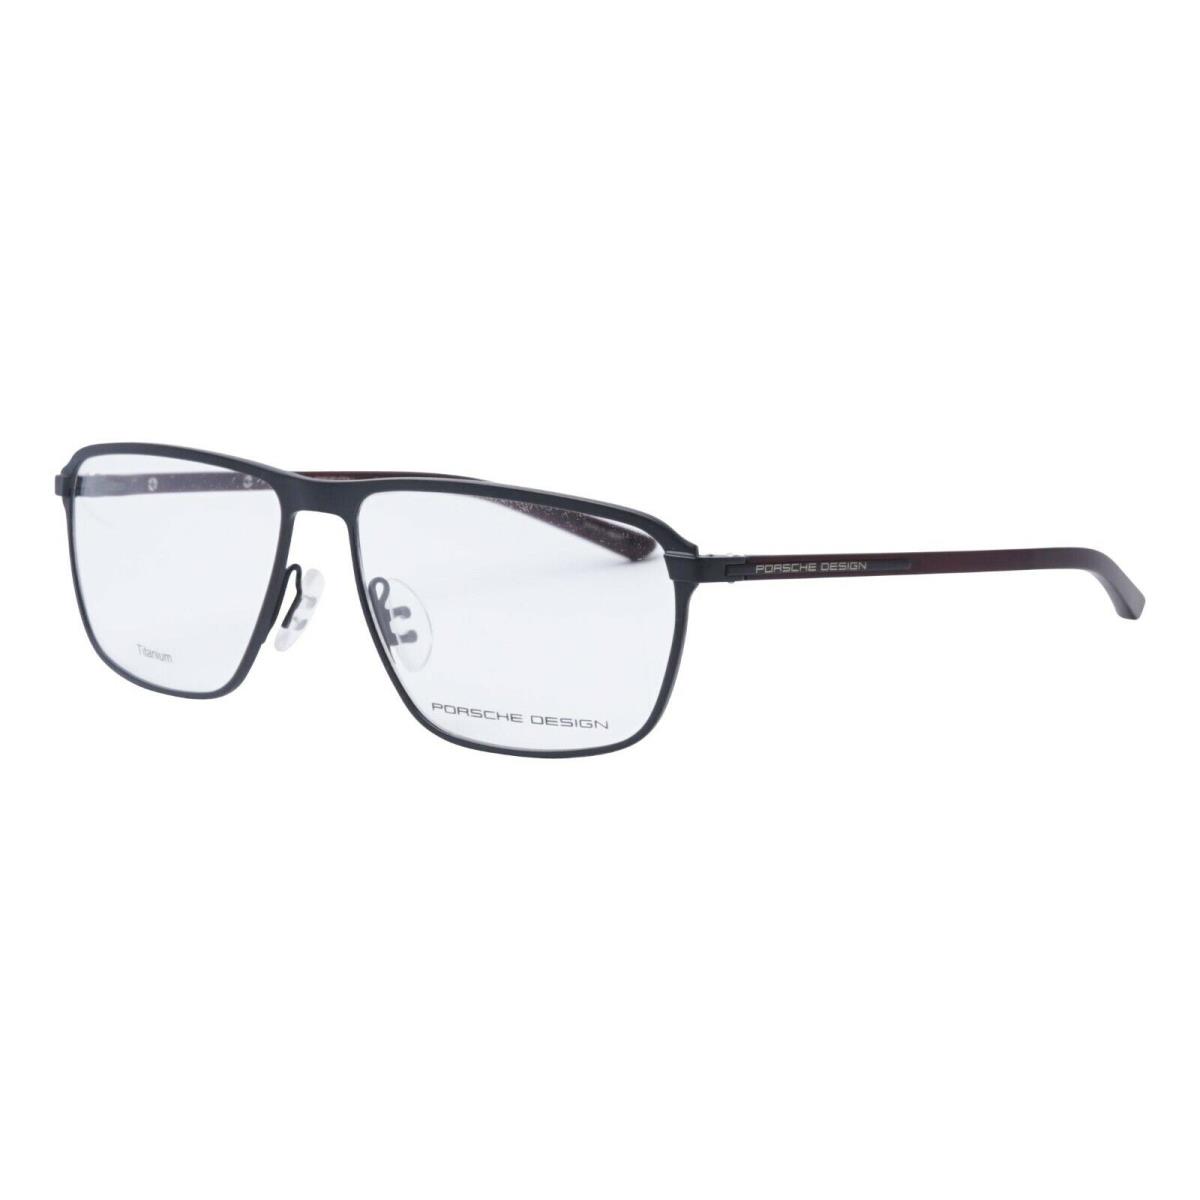 Porsche Design Eyeglasses P8285 Retail 4 Colors 56mm